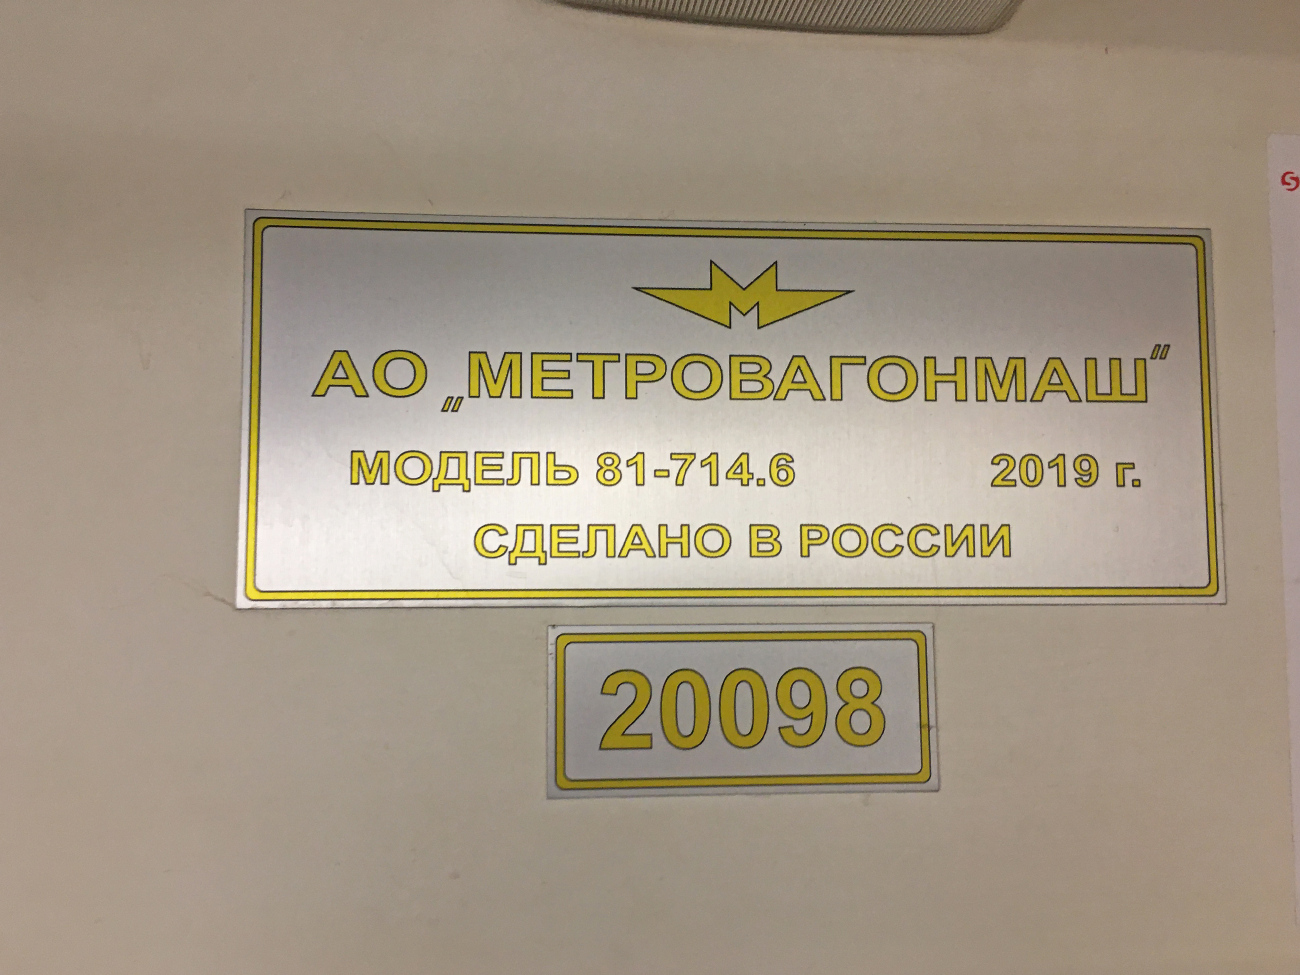 Екатеринбург, 81-714.6 № 20098